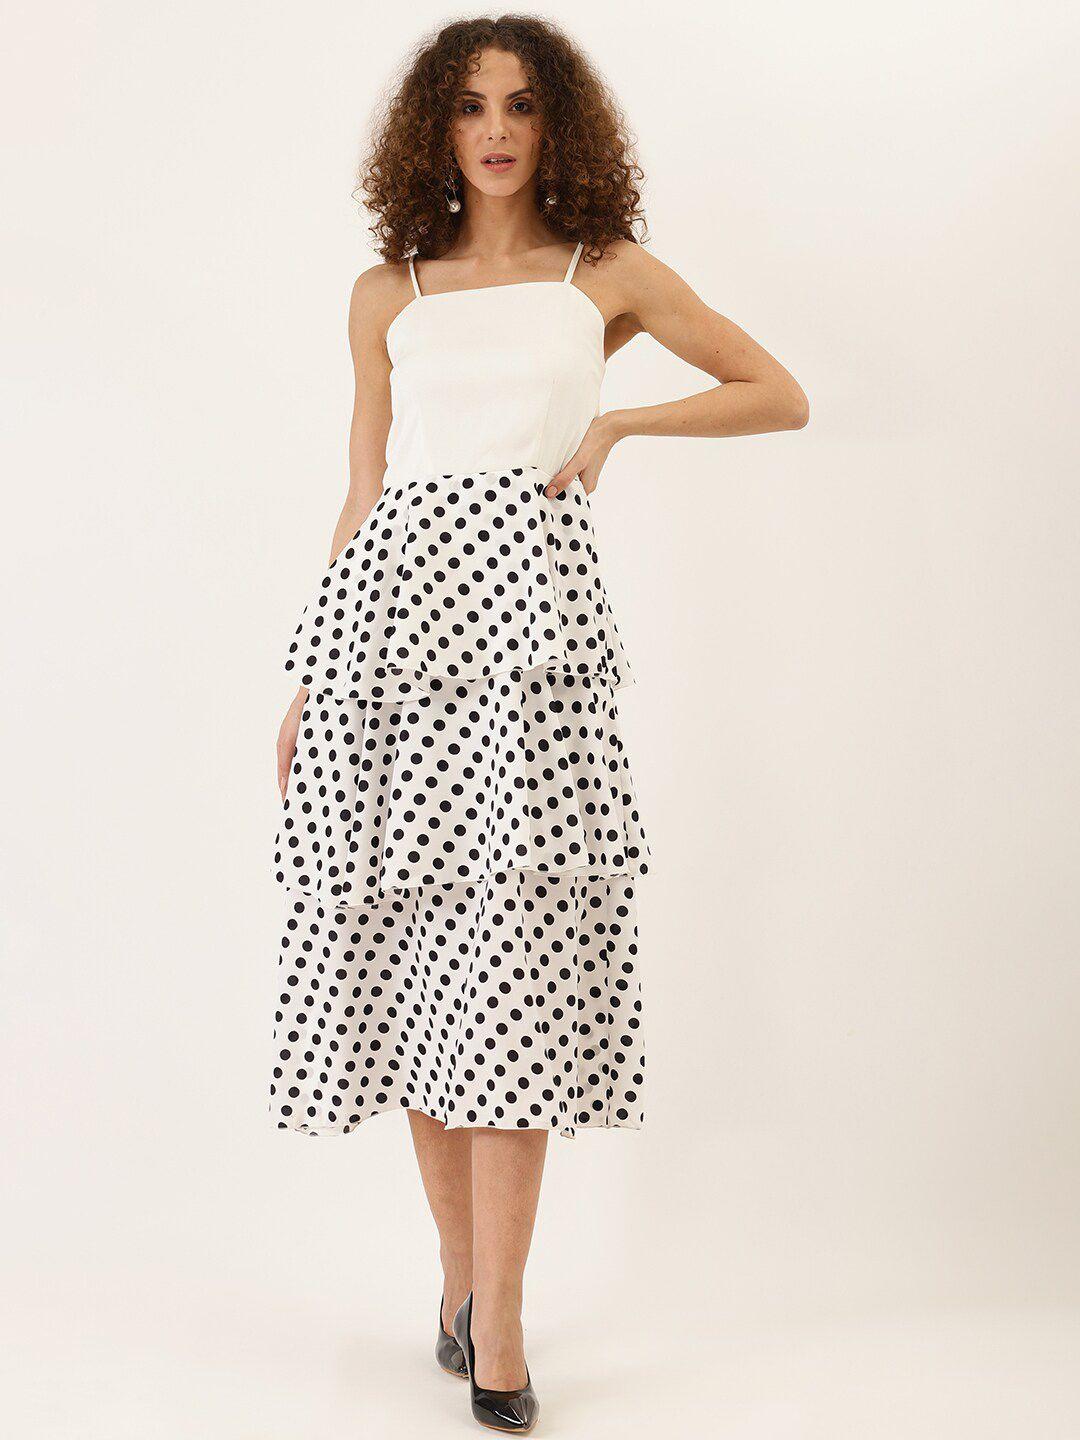 dodo & moa white polka dot print layered crepe fit & flare midi dress